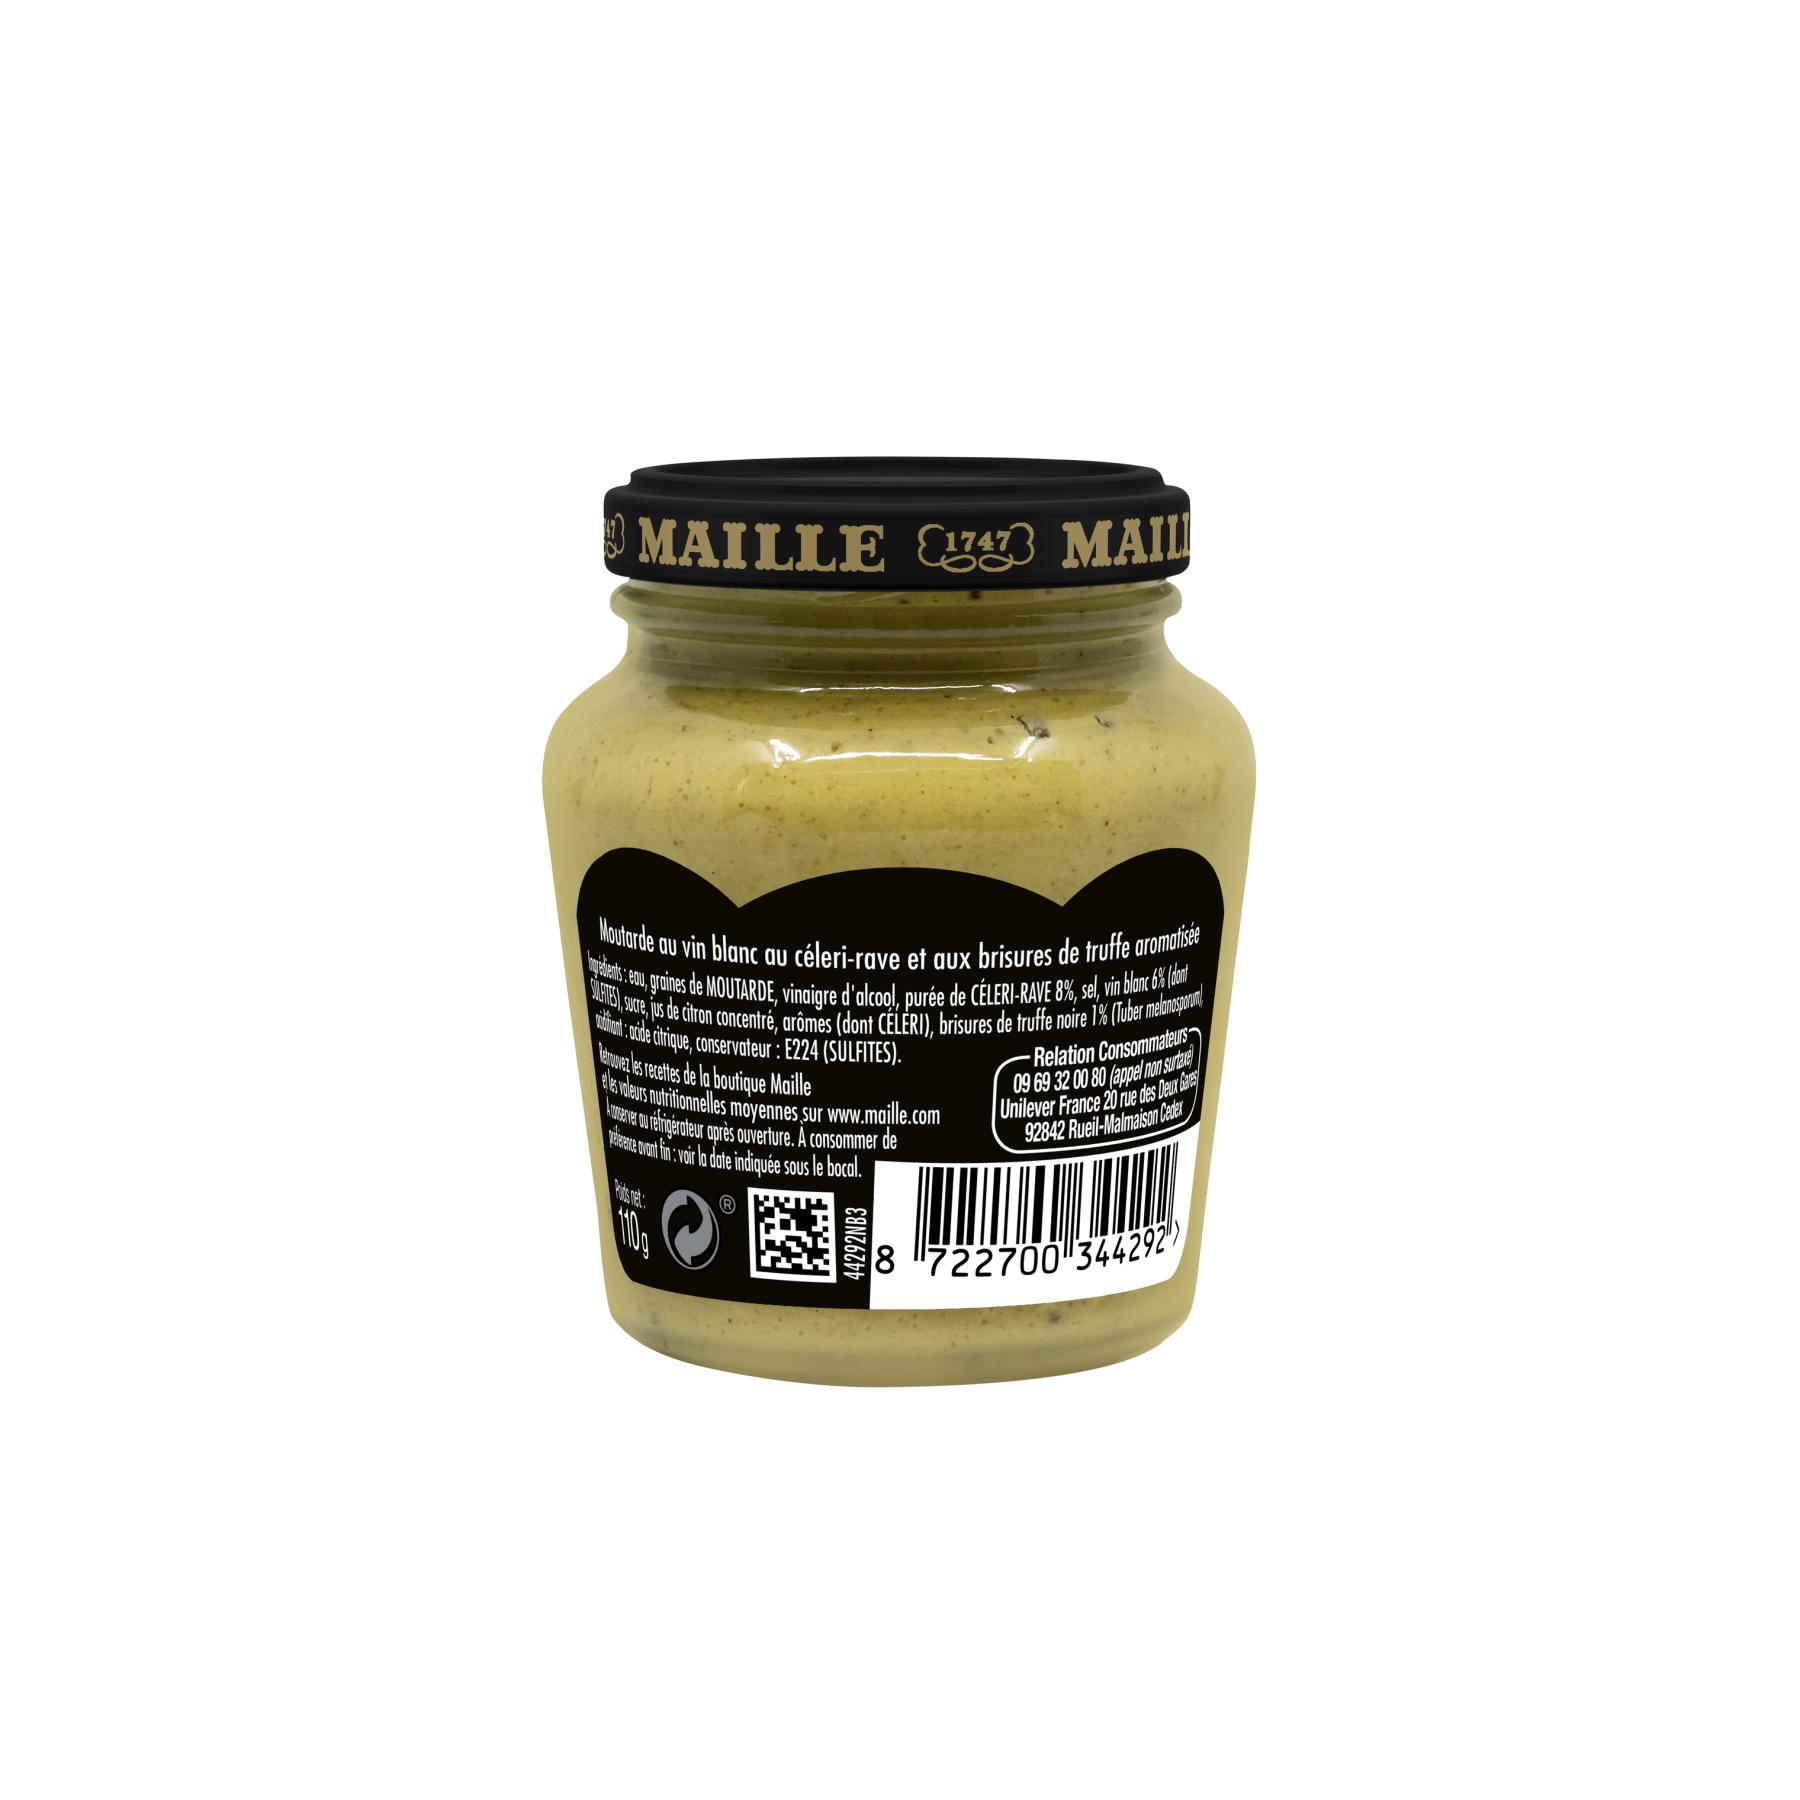 Maille - Moutarde au vin blanc, celeri-rave et brisures de truffe, 110 g, ARRIERE